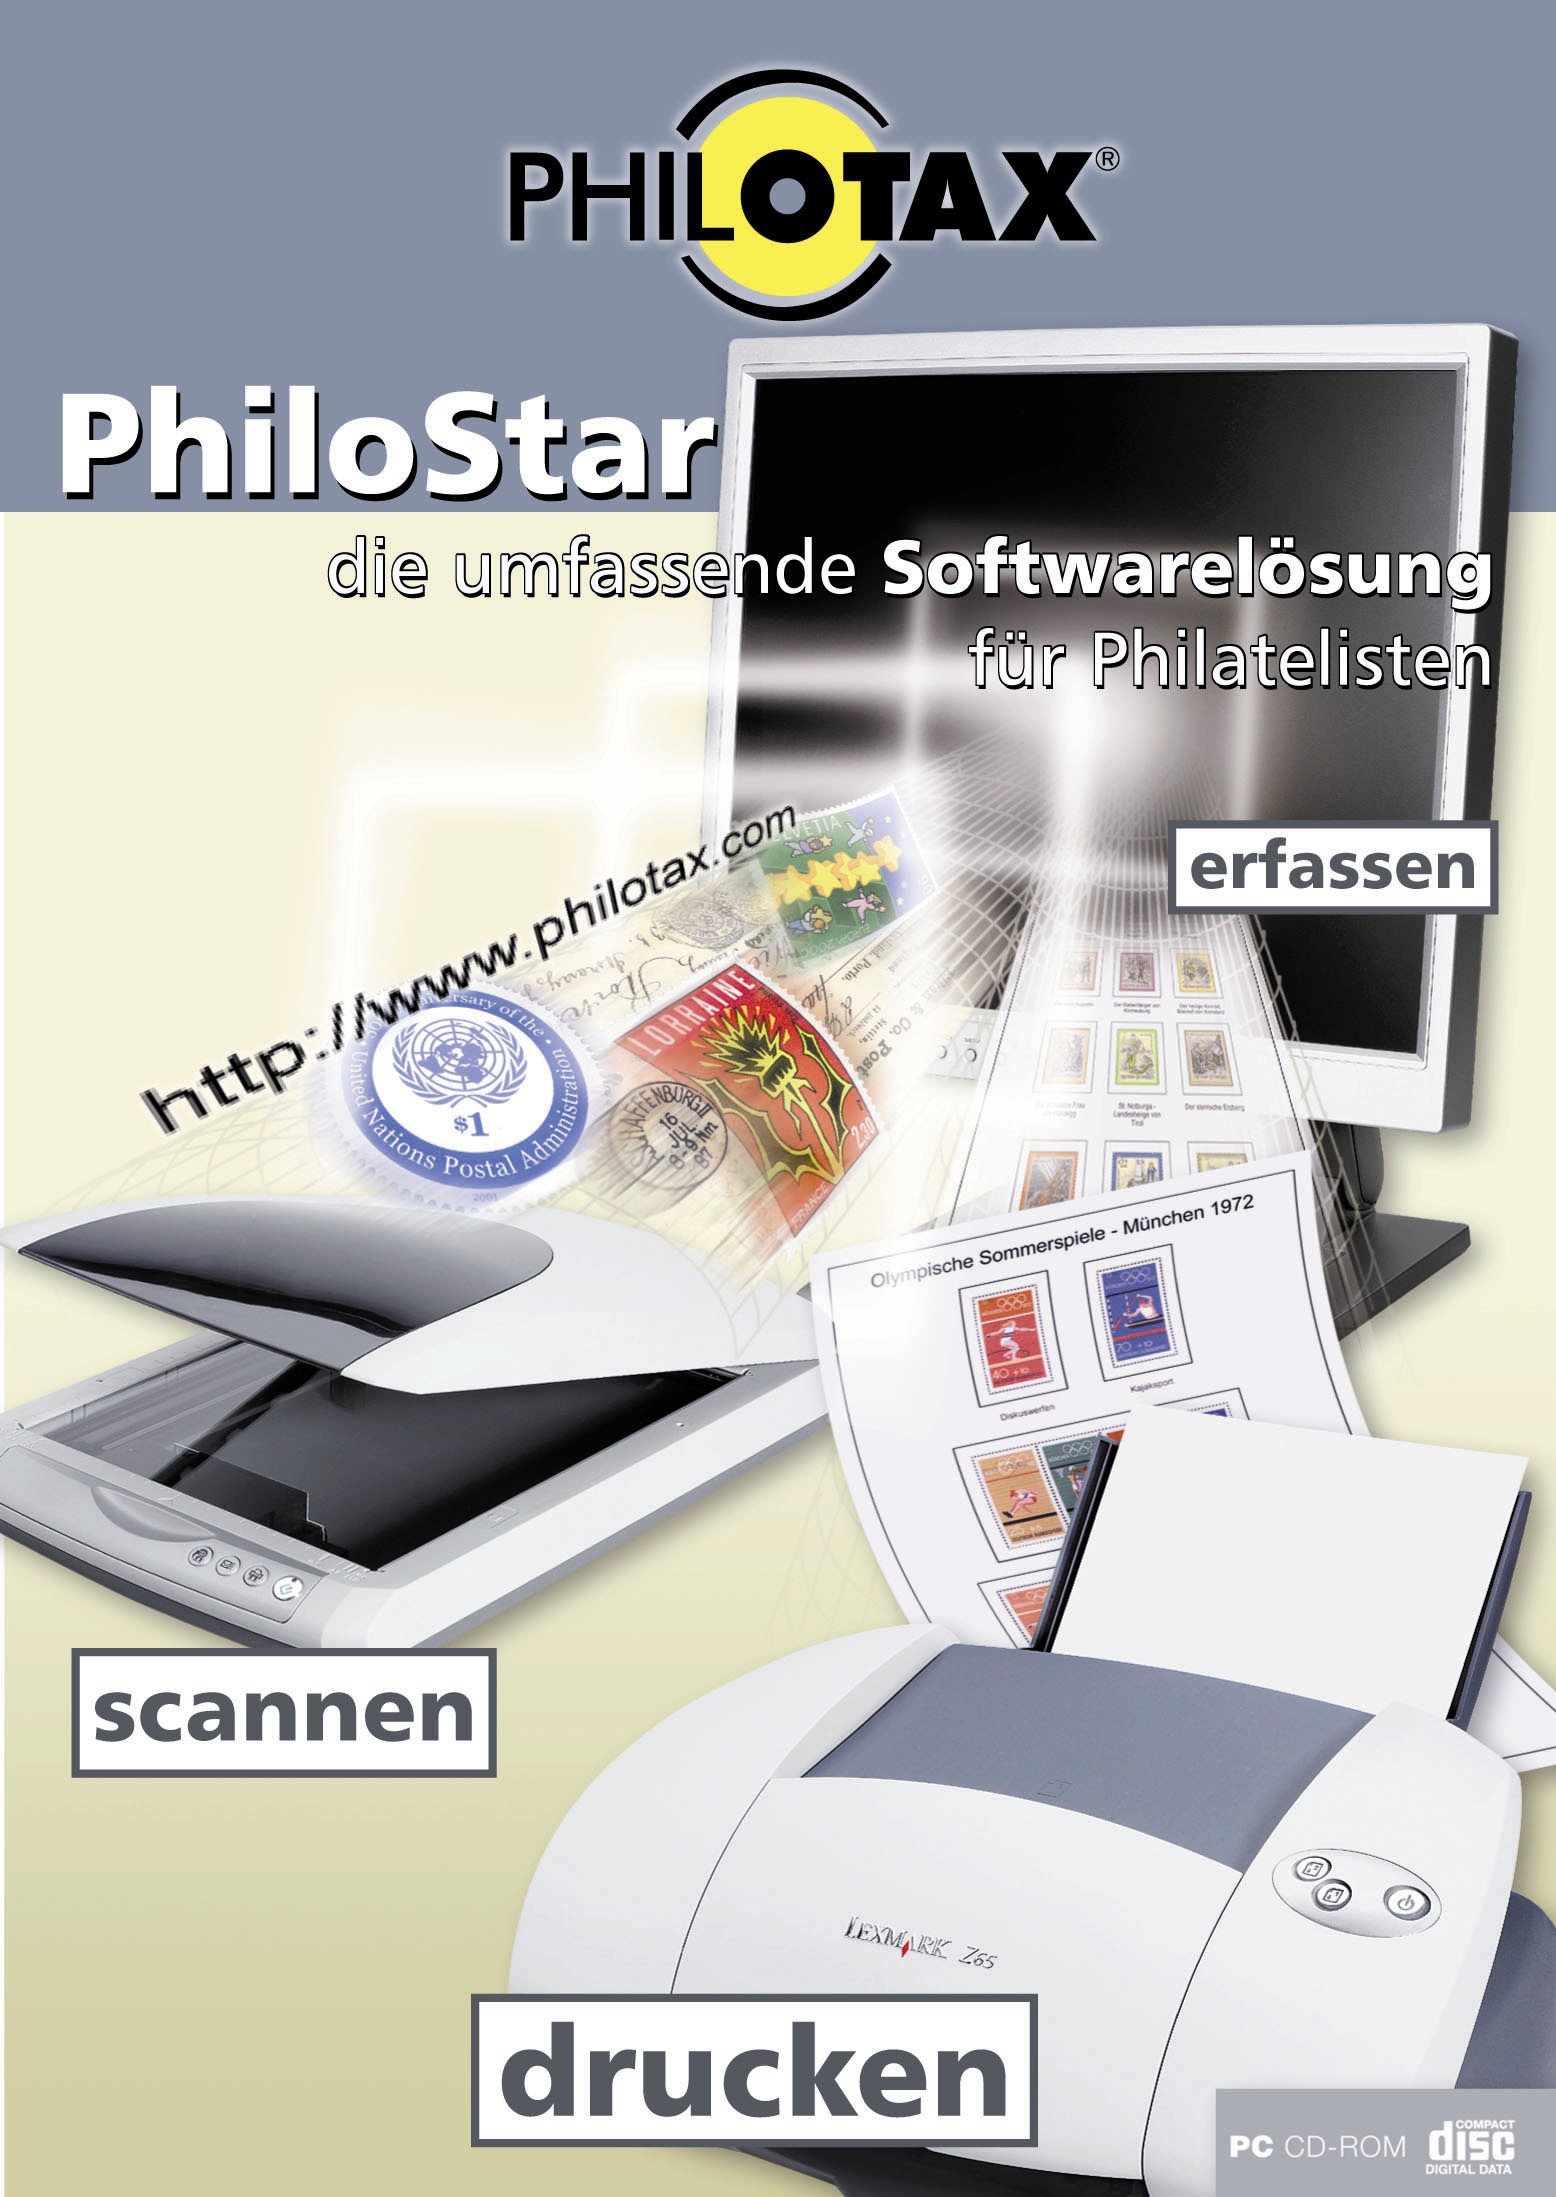 Philotax PhiloStar